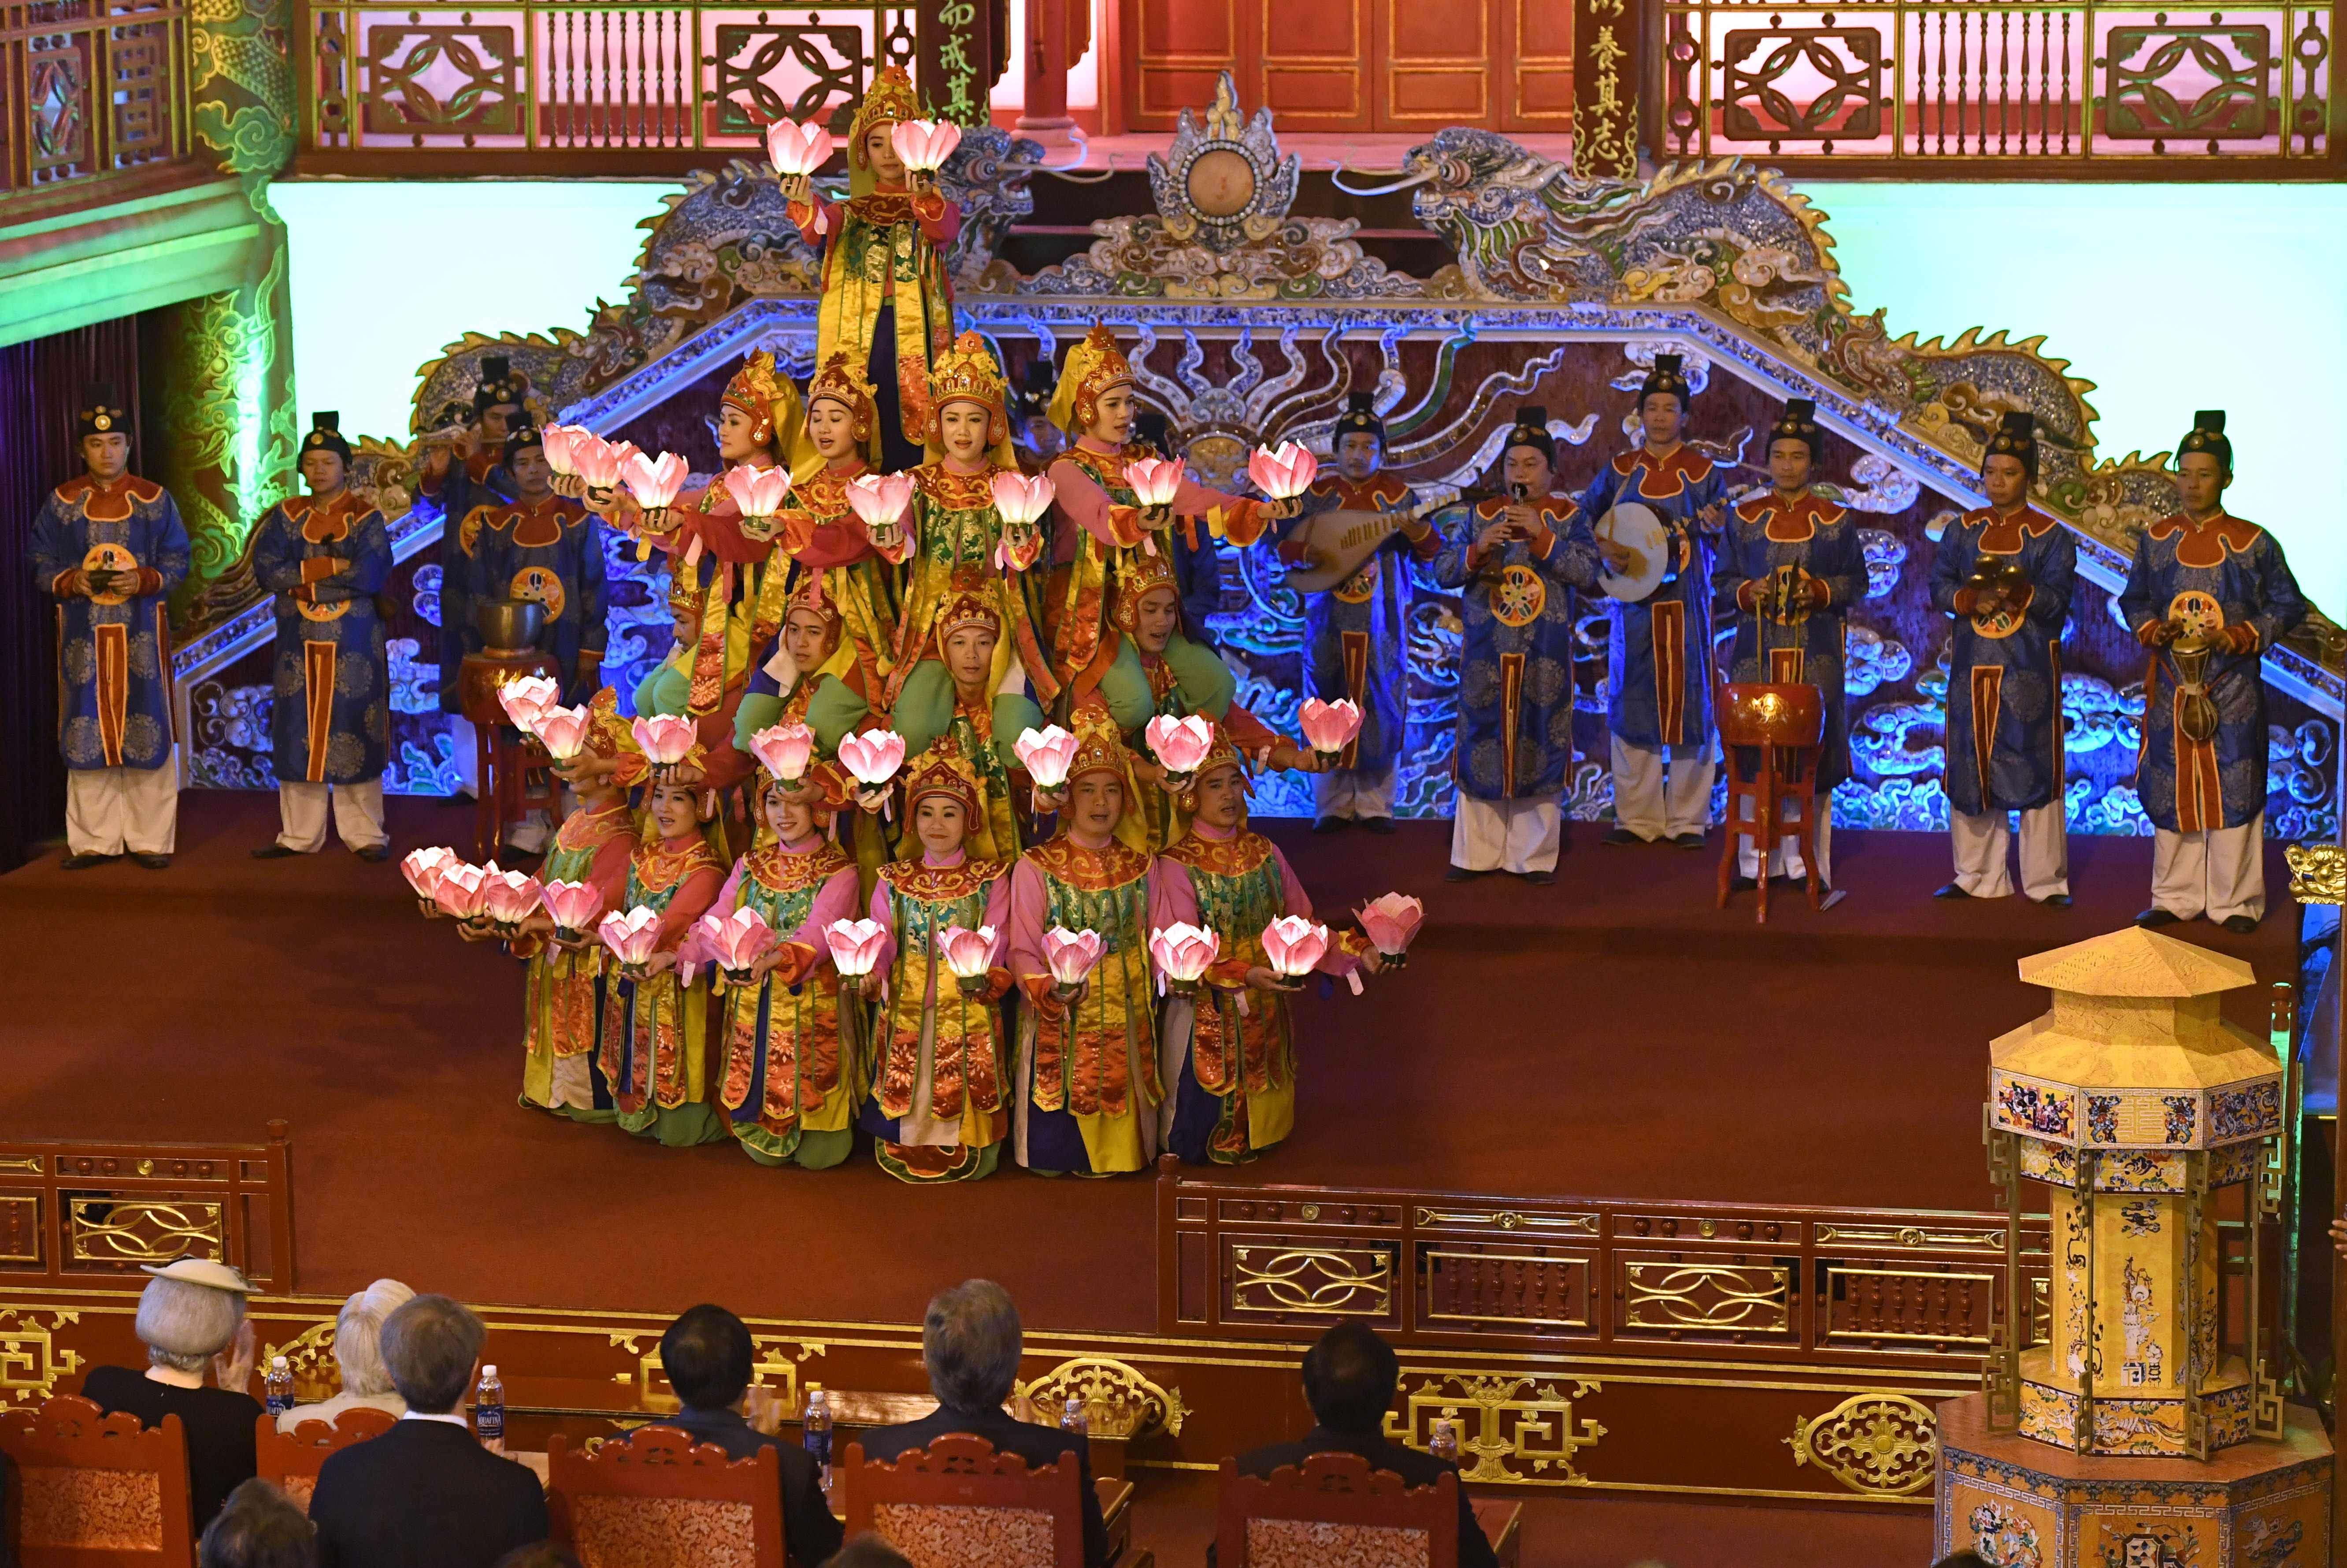 رقصة الملكة خلال زيارة أمبراطور اليابان لمدينة هوى